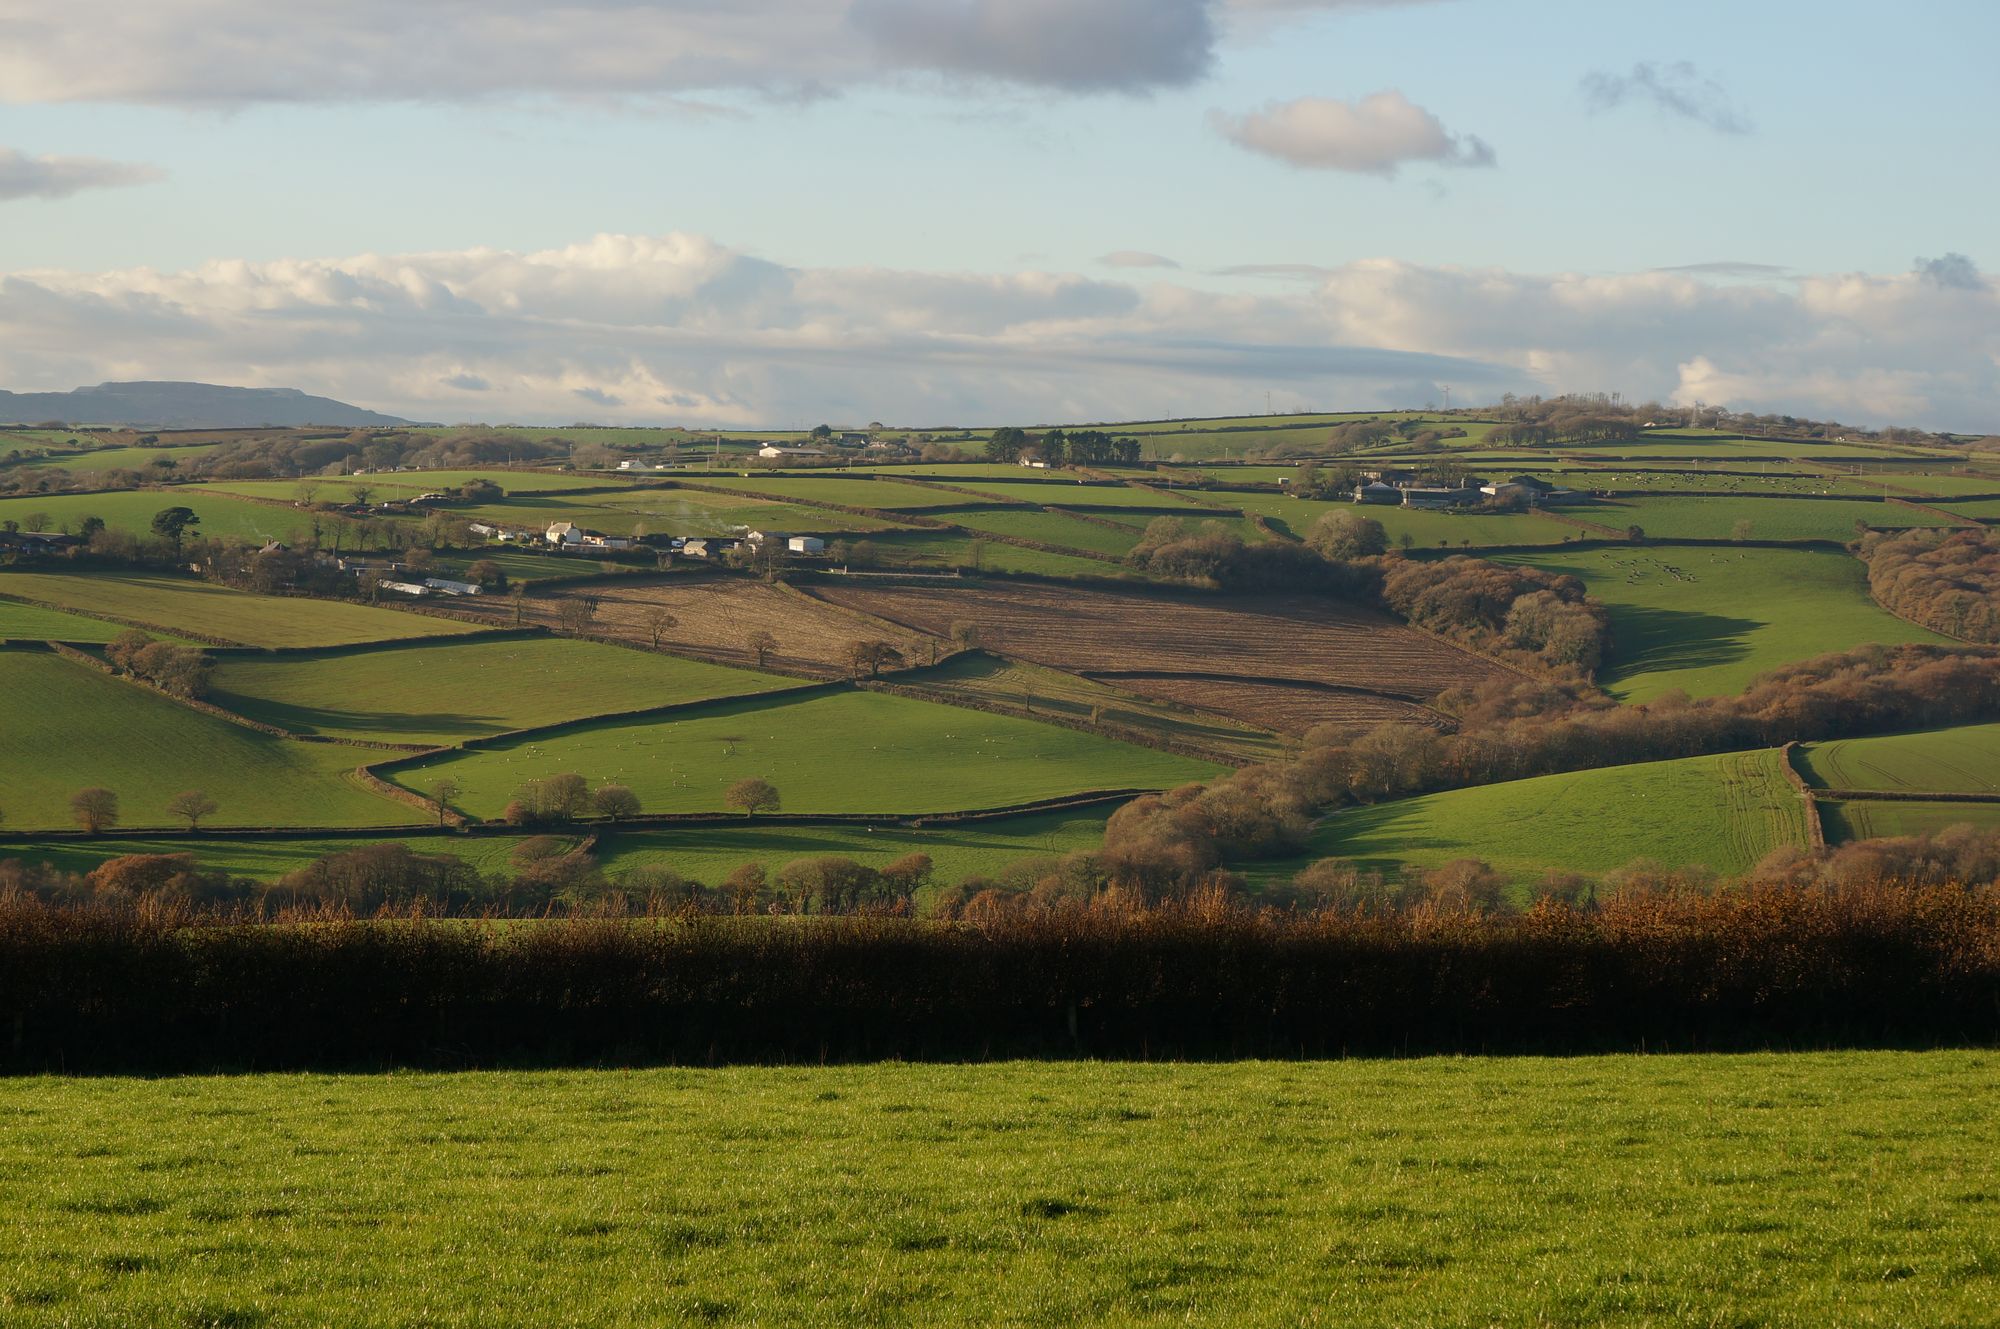 Blick auf die Hügel und Felder von Cornwall mit vereinzelten kleinen Siedlungen.